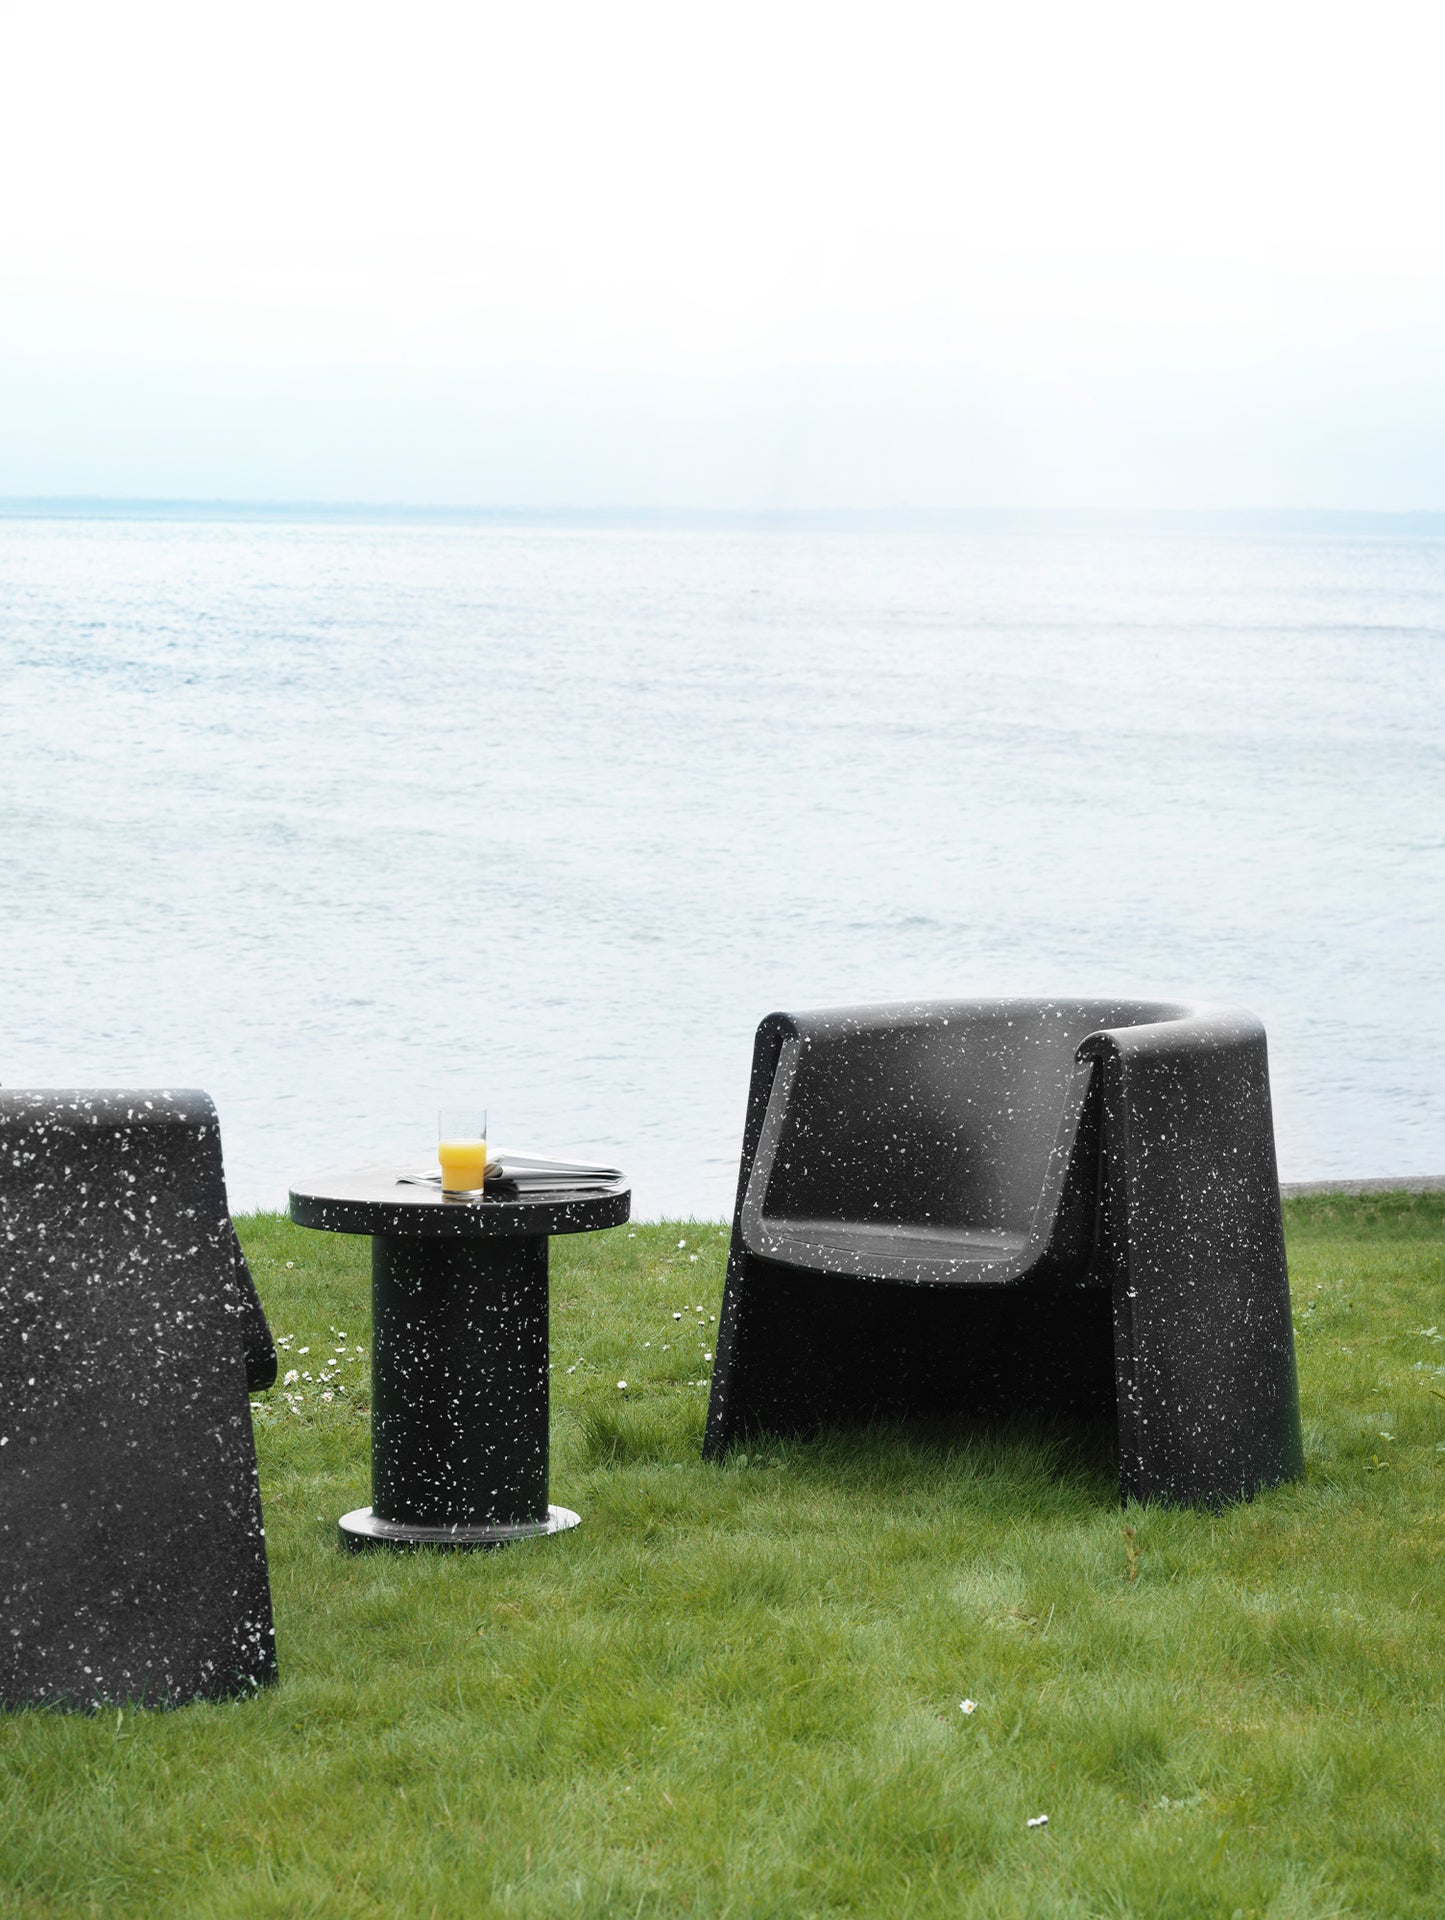 Bit Side Table by Normann Copenhagen - Black